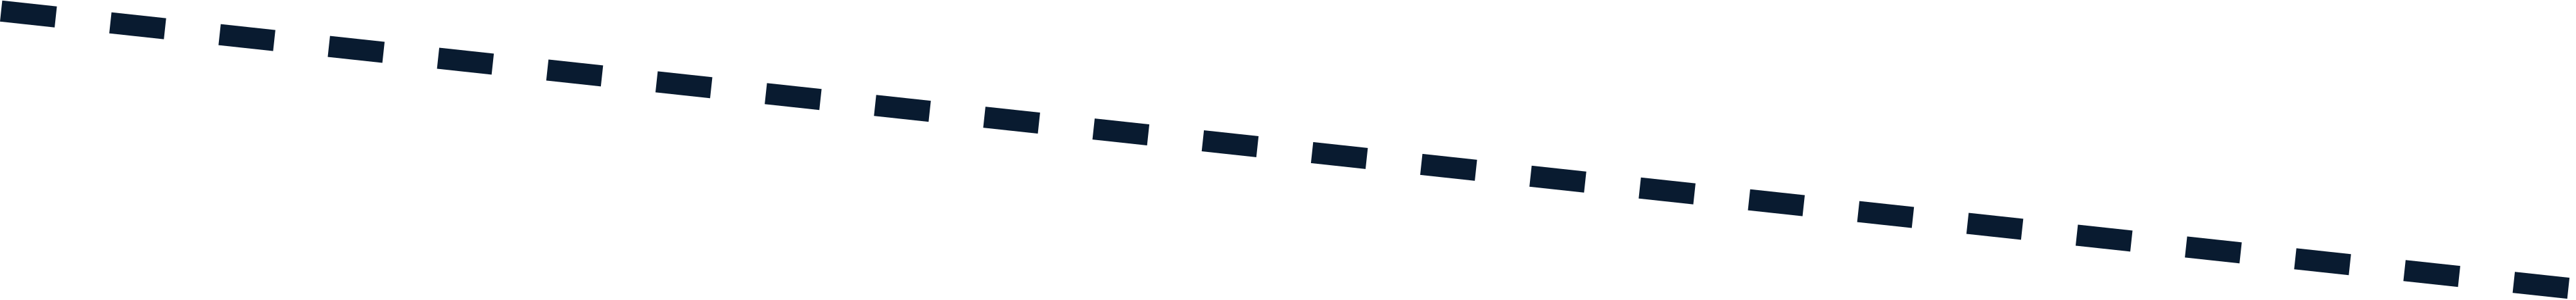 dotted line Illustration in PNG, SVG